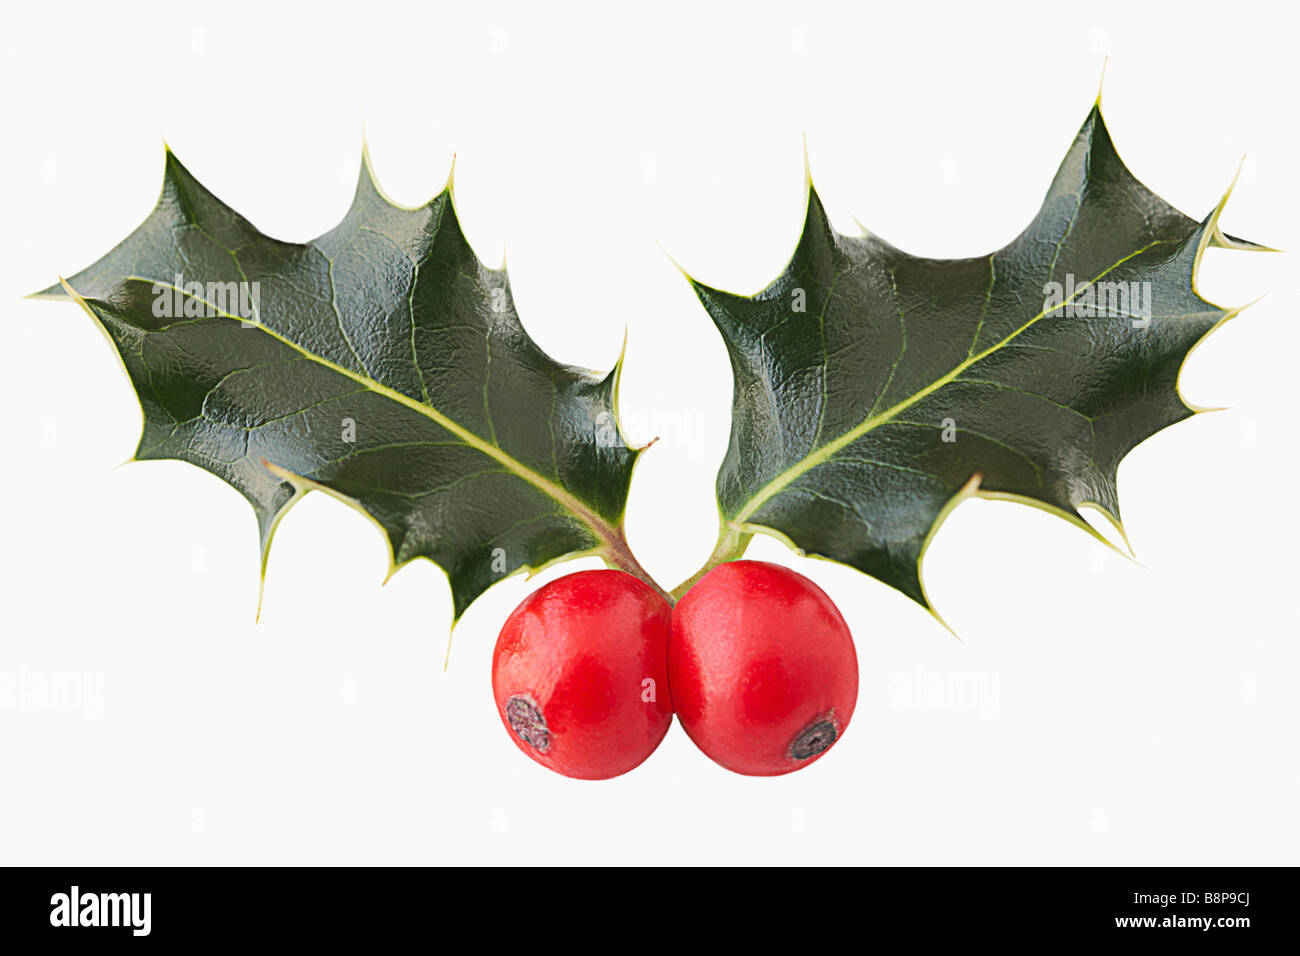 Holly (Llex Aquifolium) Stock Photo